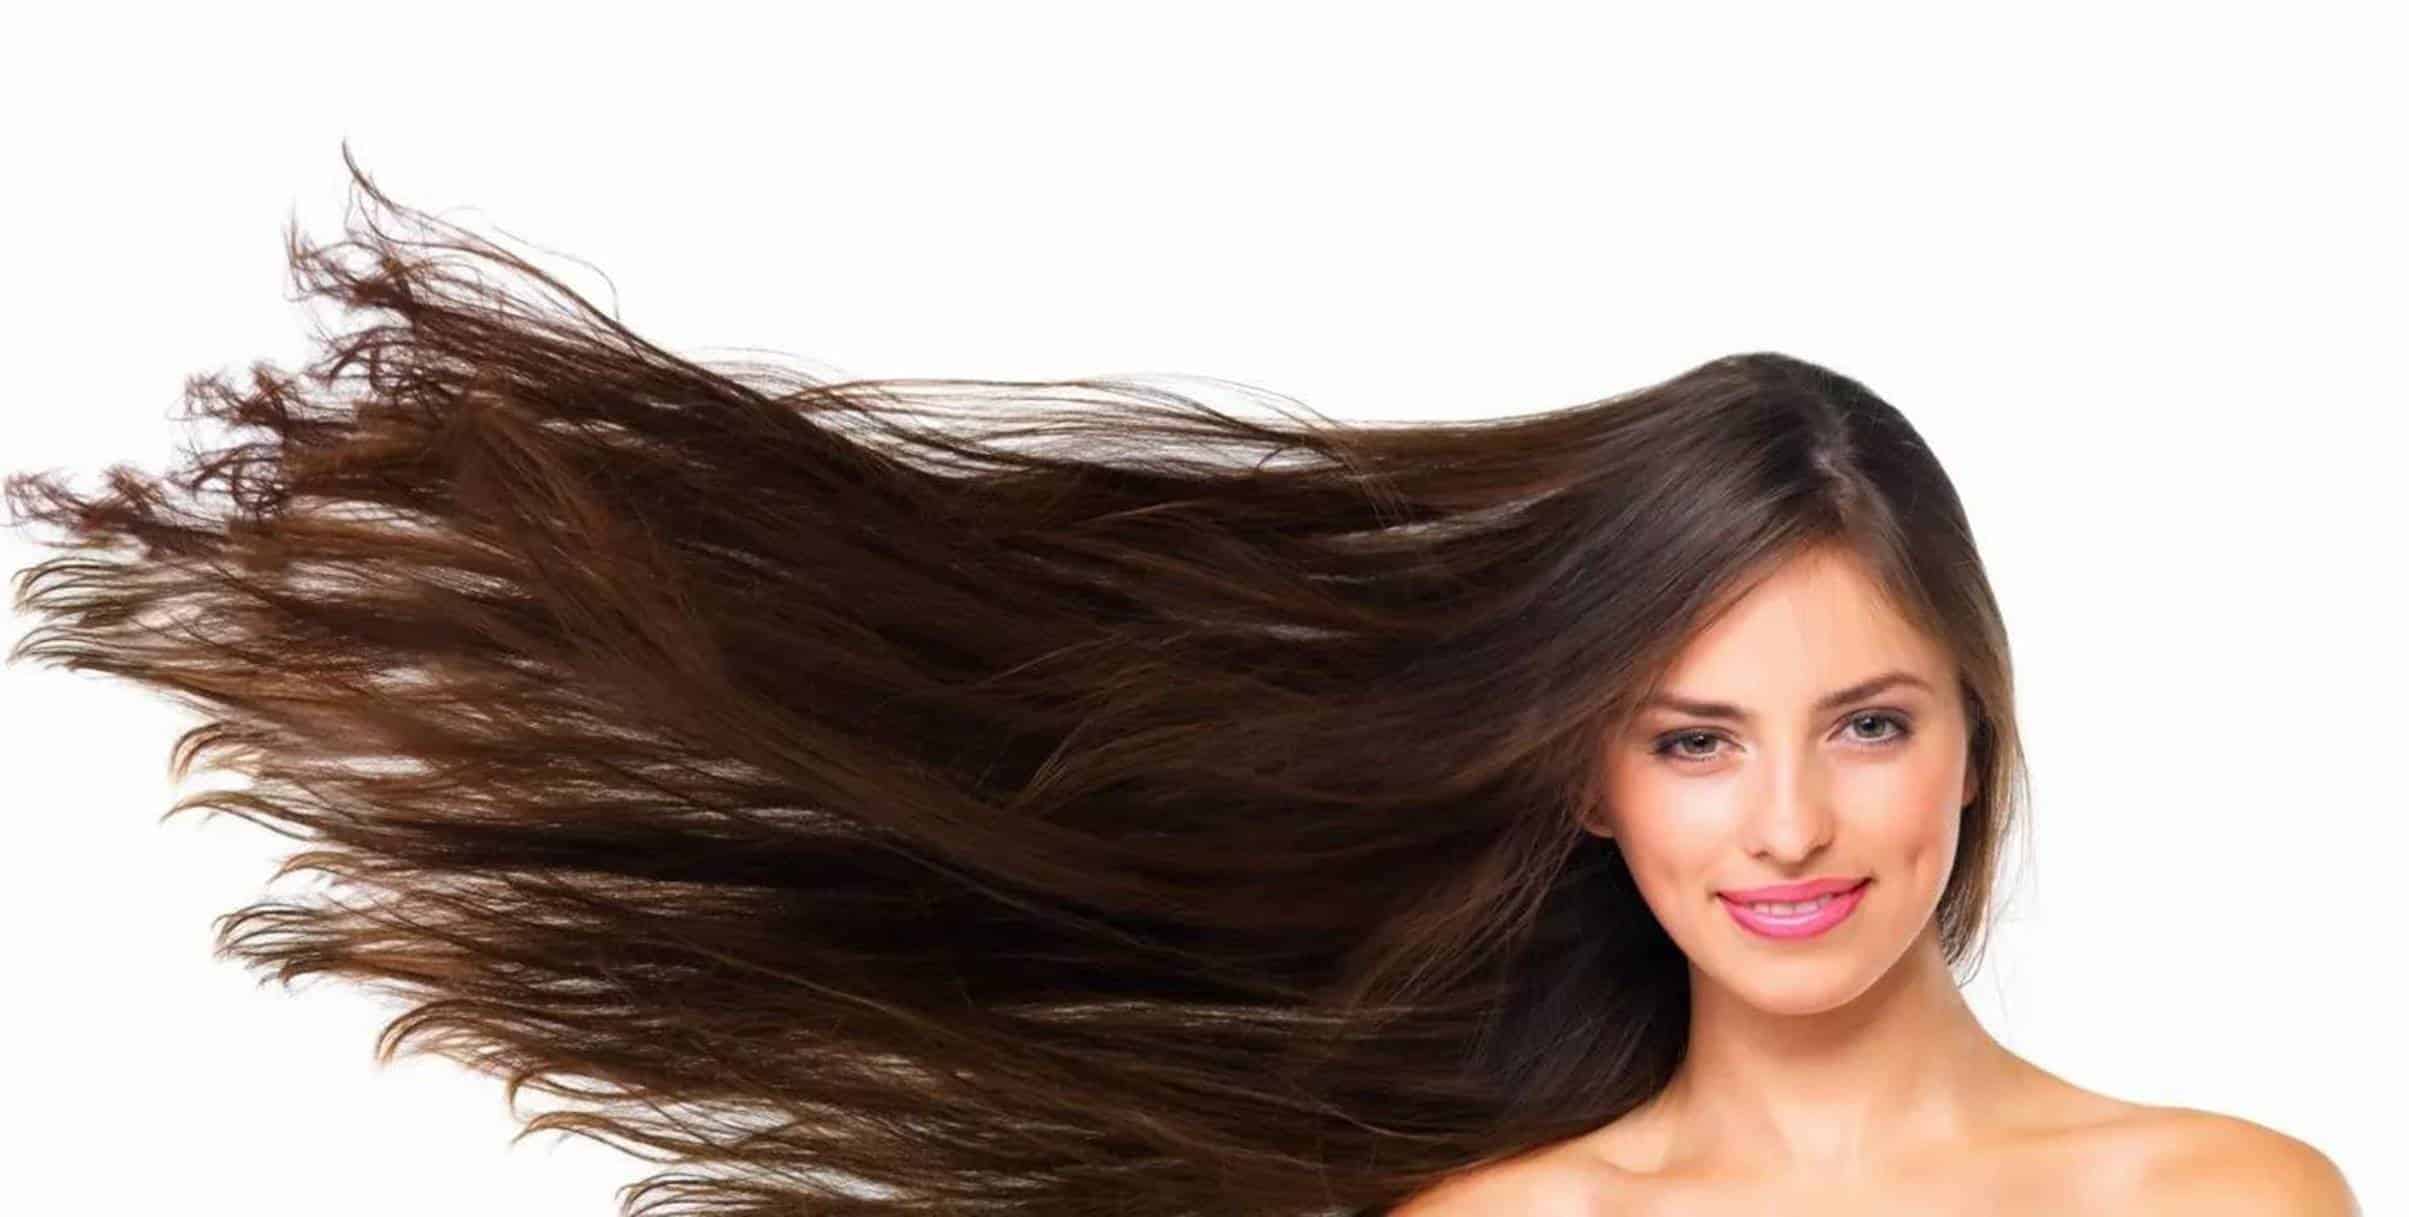 Trazemos para você o segredo de um cabelo longo e saudável